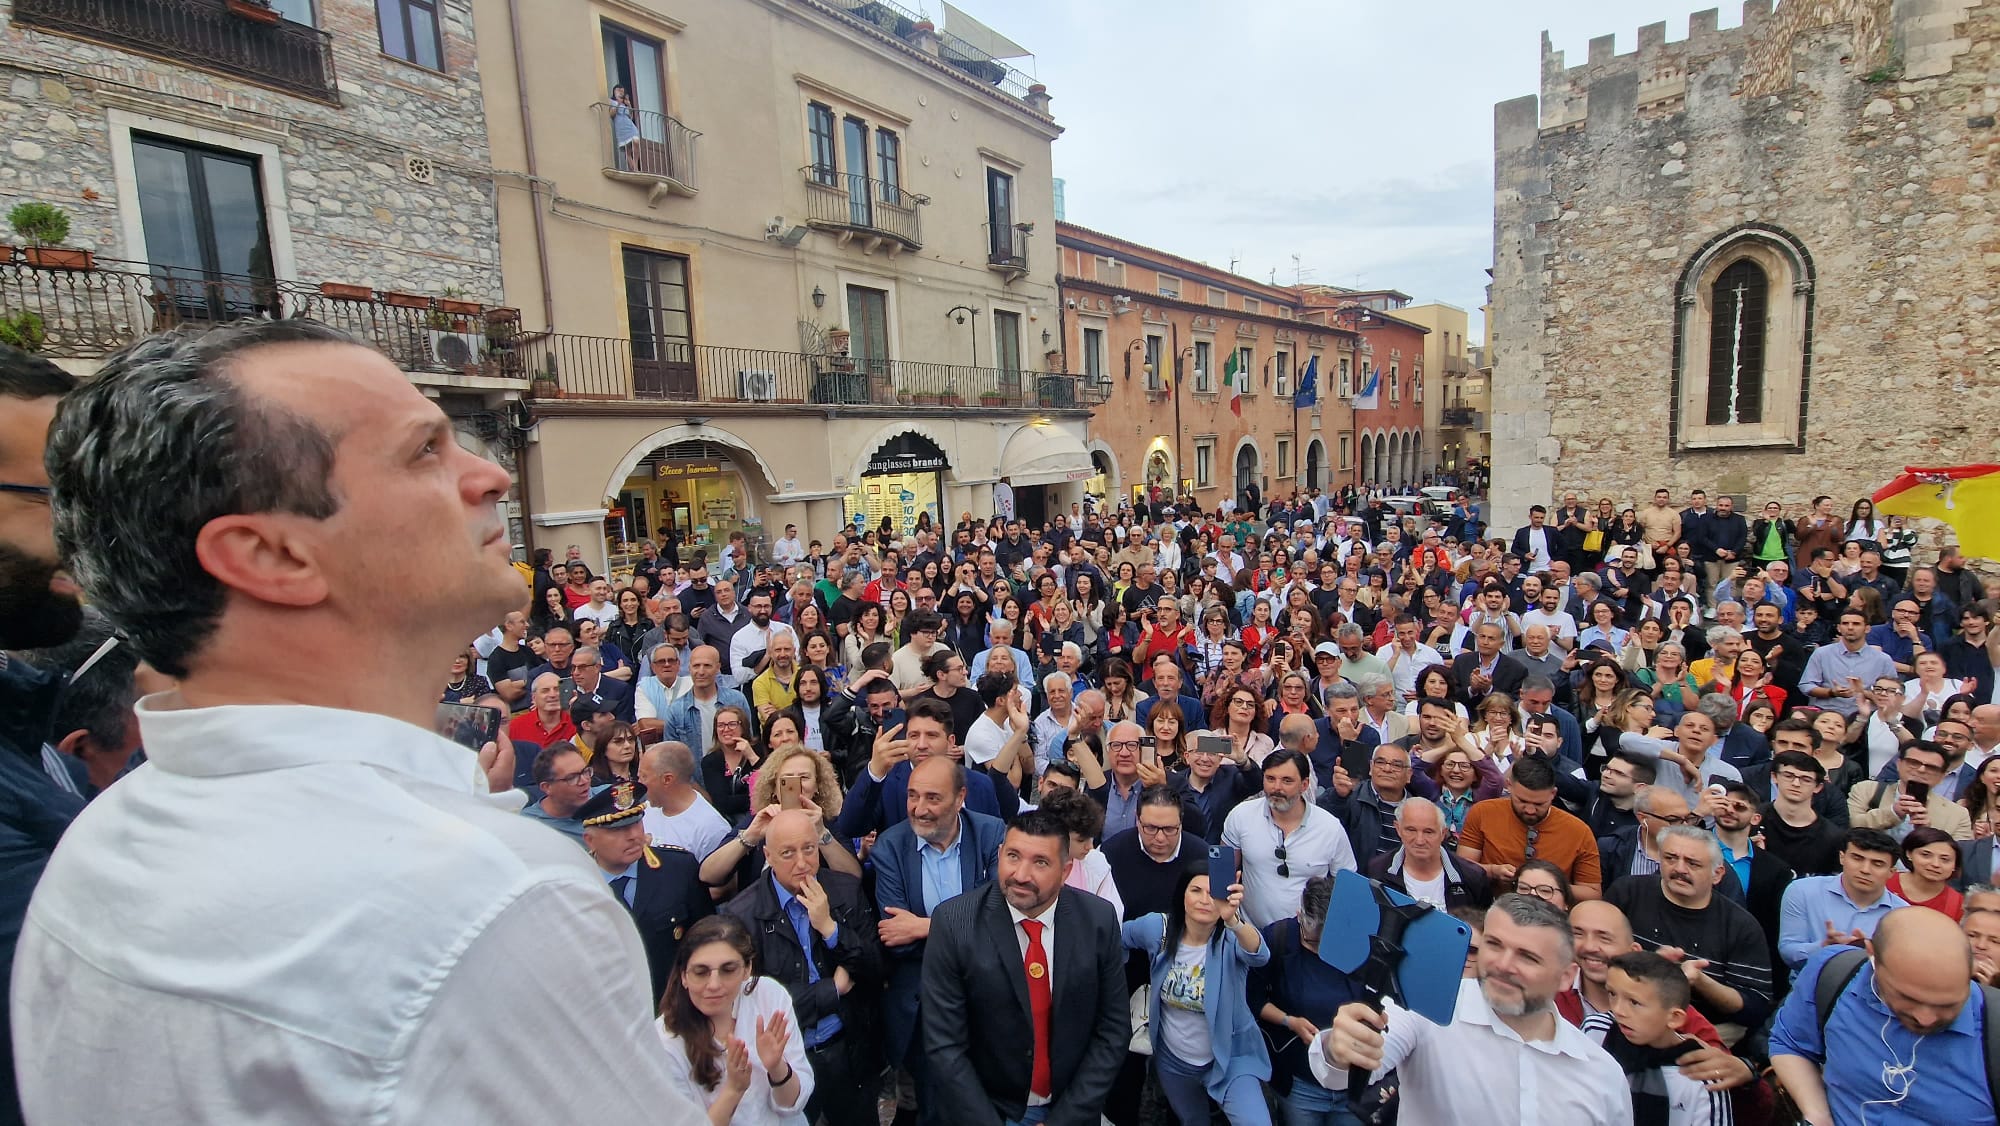 Cateno De Luca sindaco dei sindaci: “Taormina mi ha regalato un sogno”